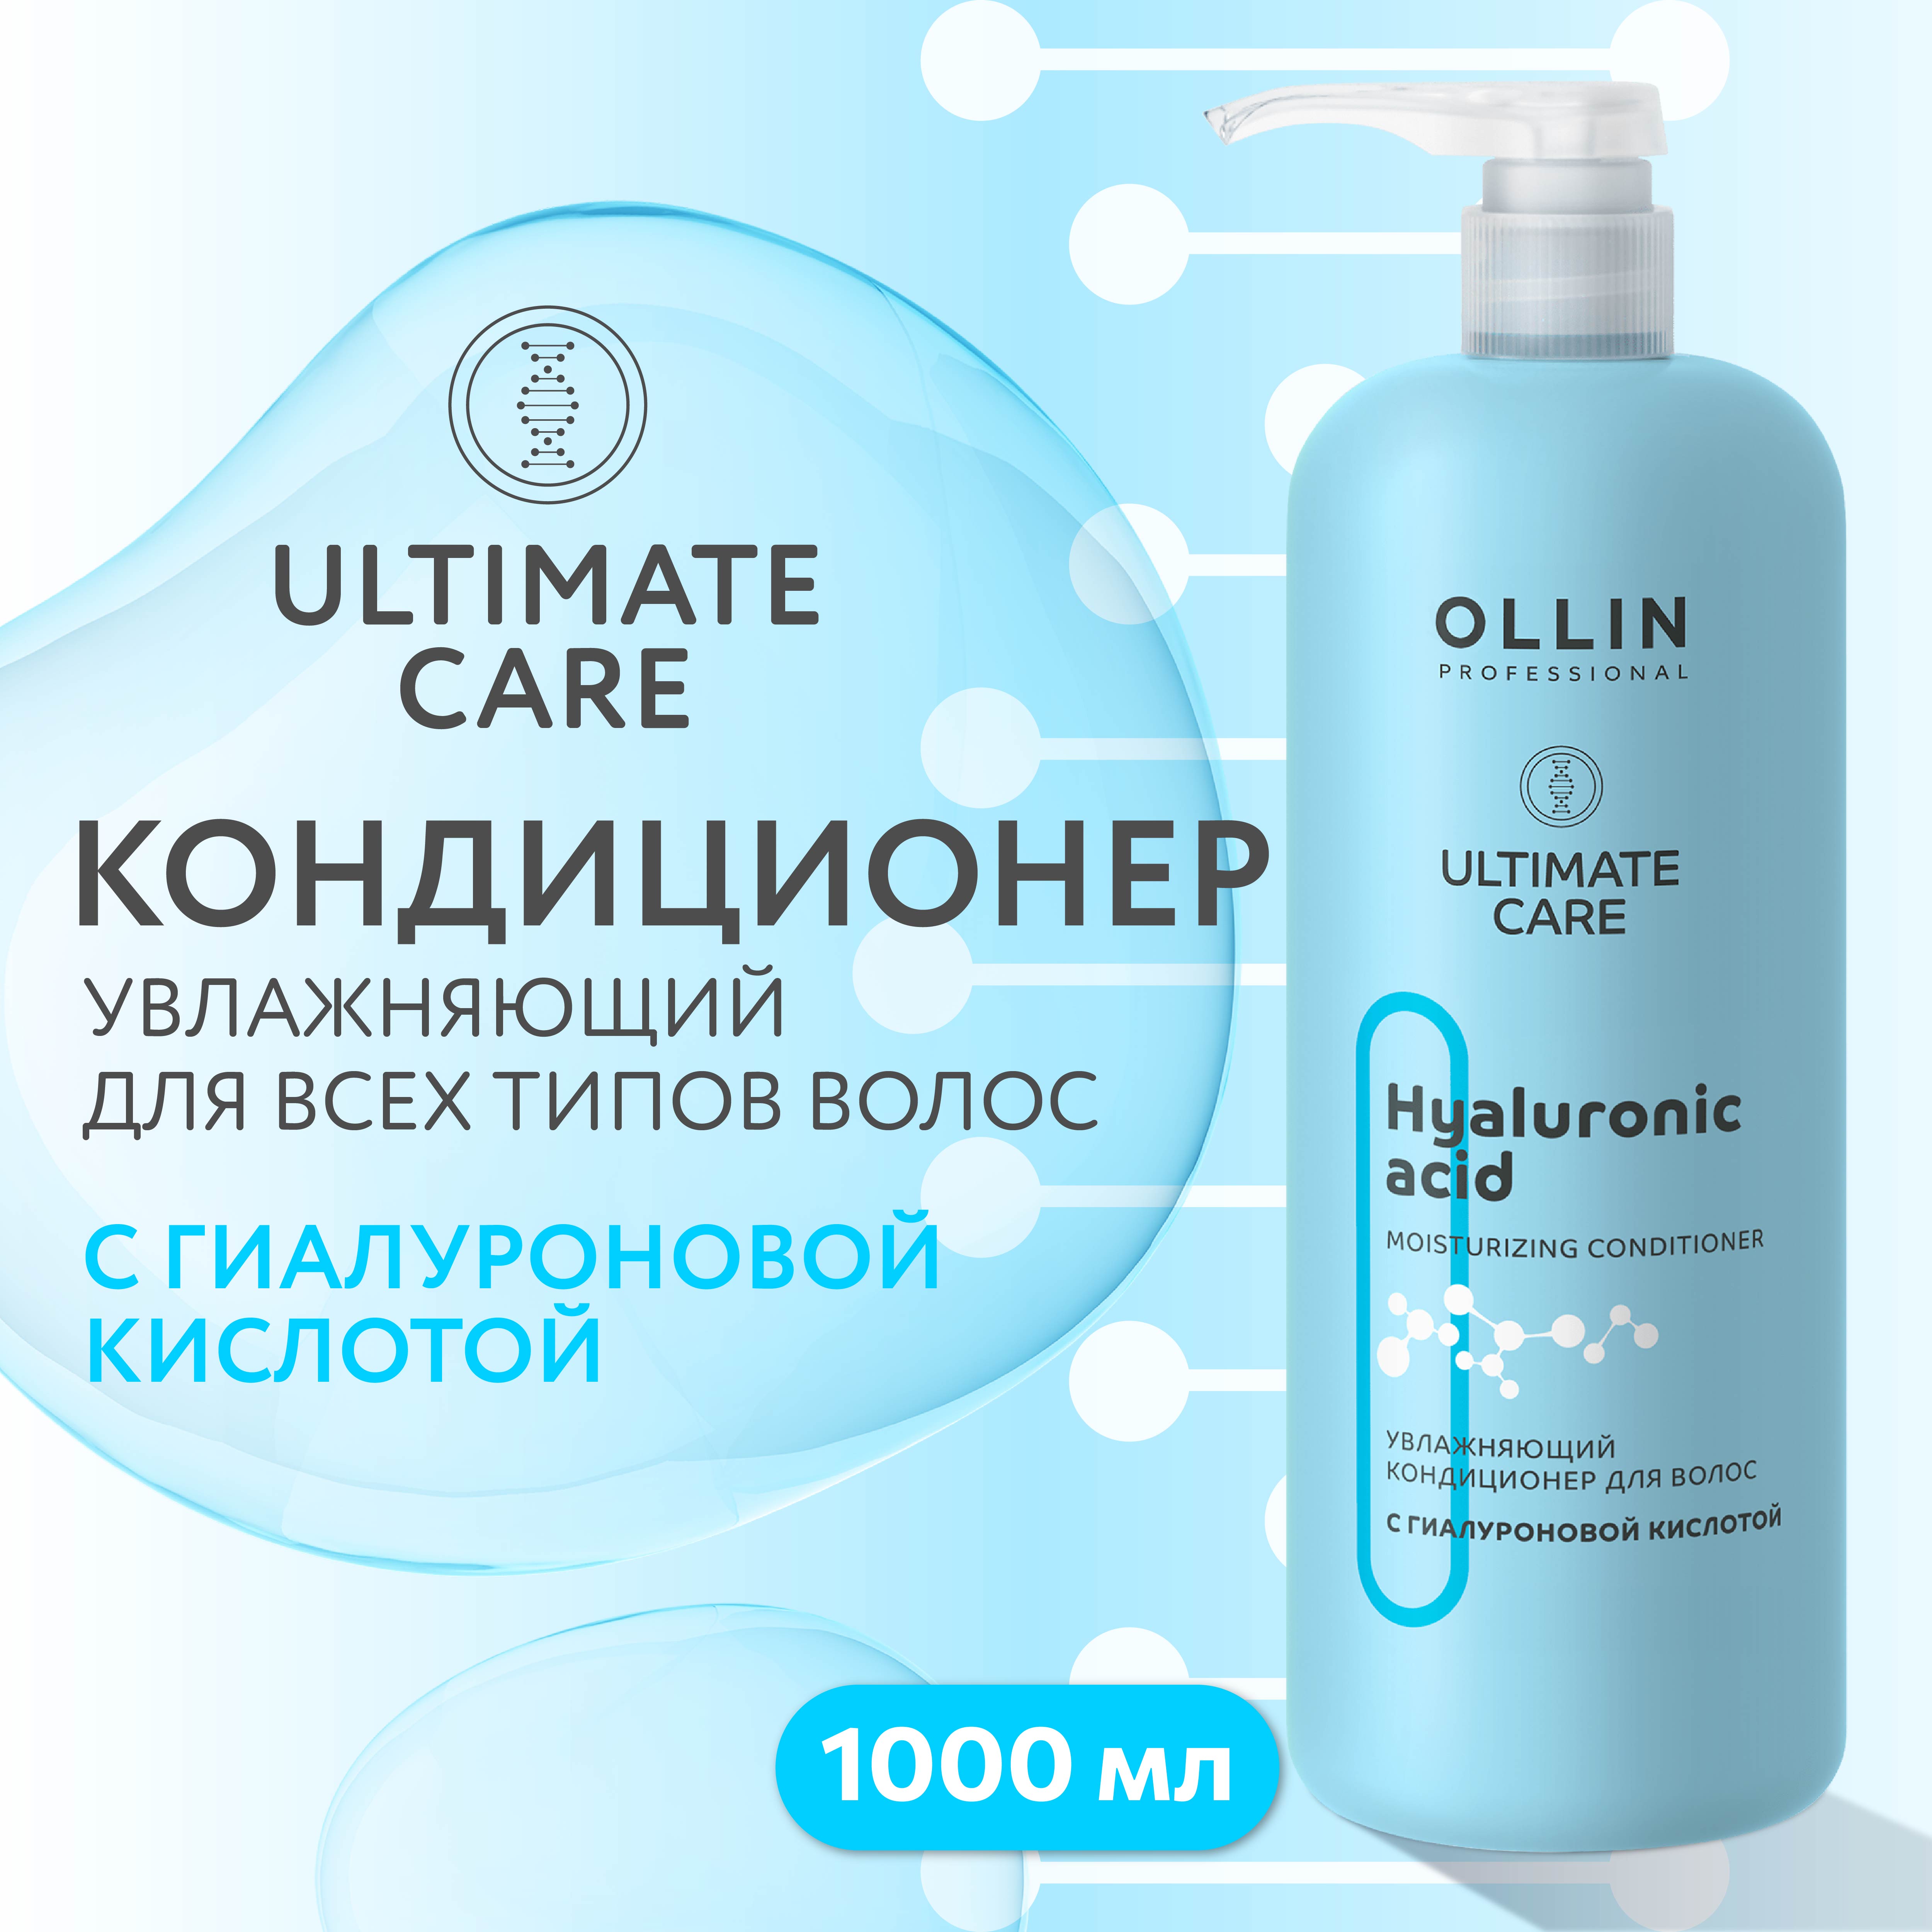 Кондиционер Ollin ultimate care для увлажнения волос с гиалуроновой кислотой 1000 мл - фото 2